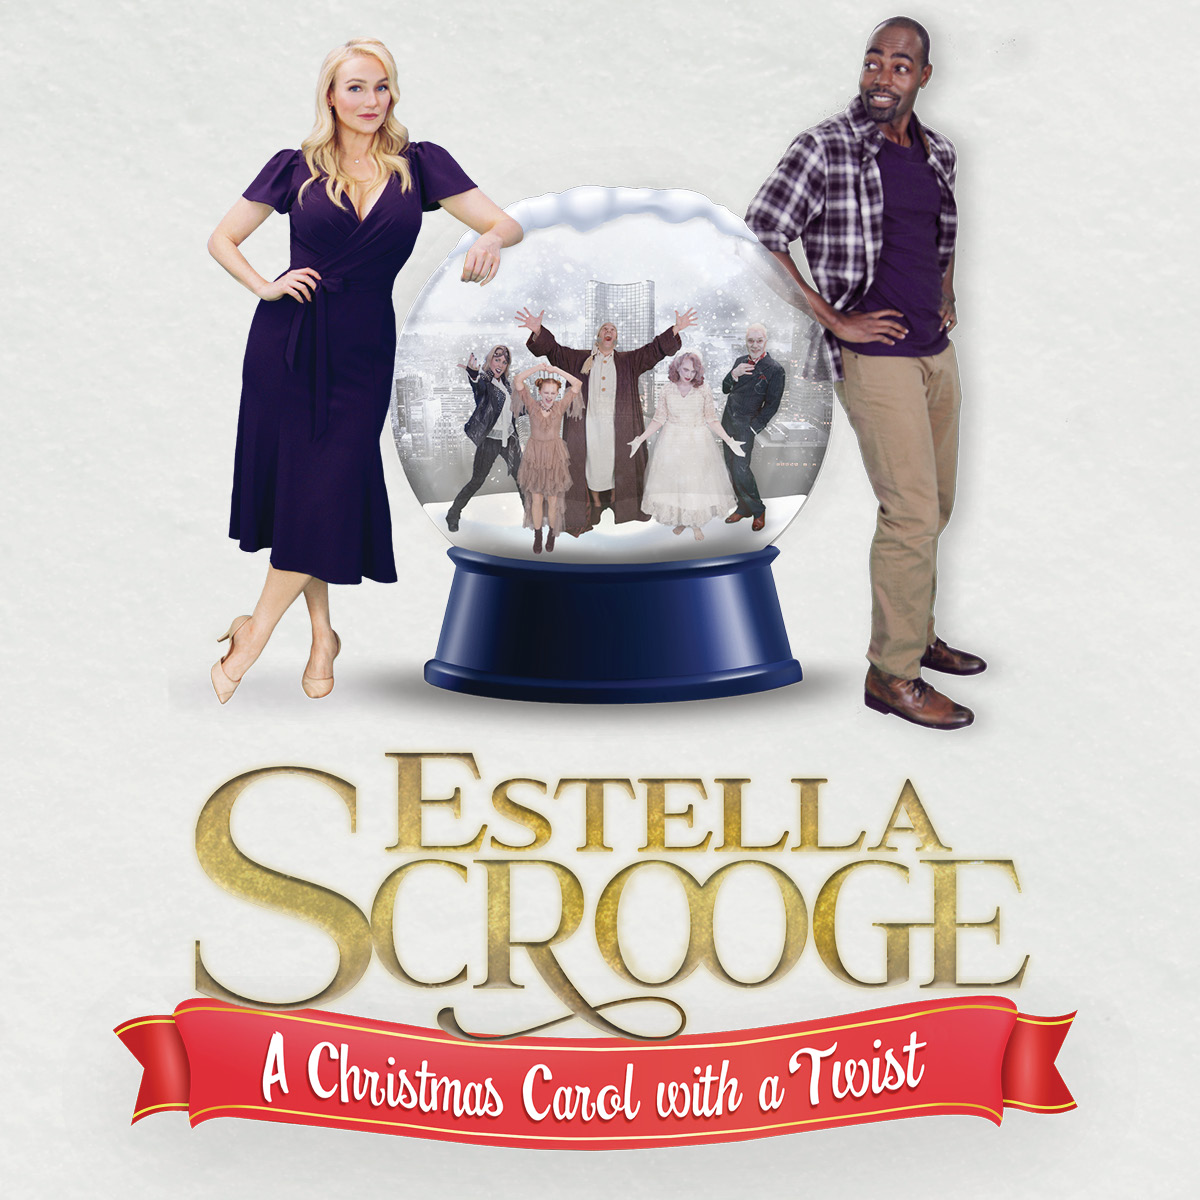 Estella Scrooge: A Christmas Carol with a Twist